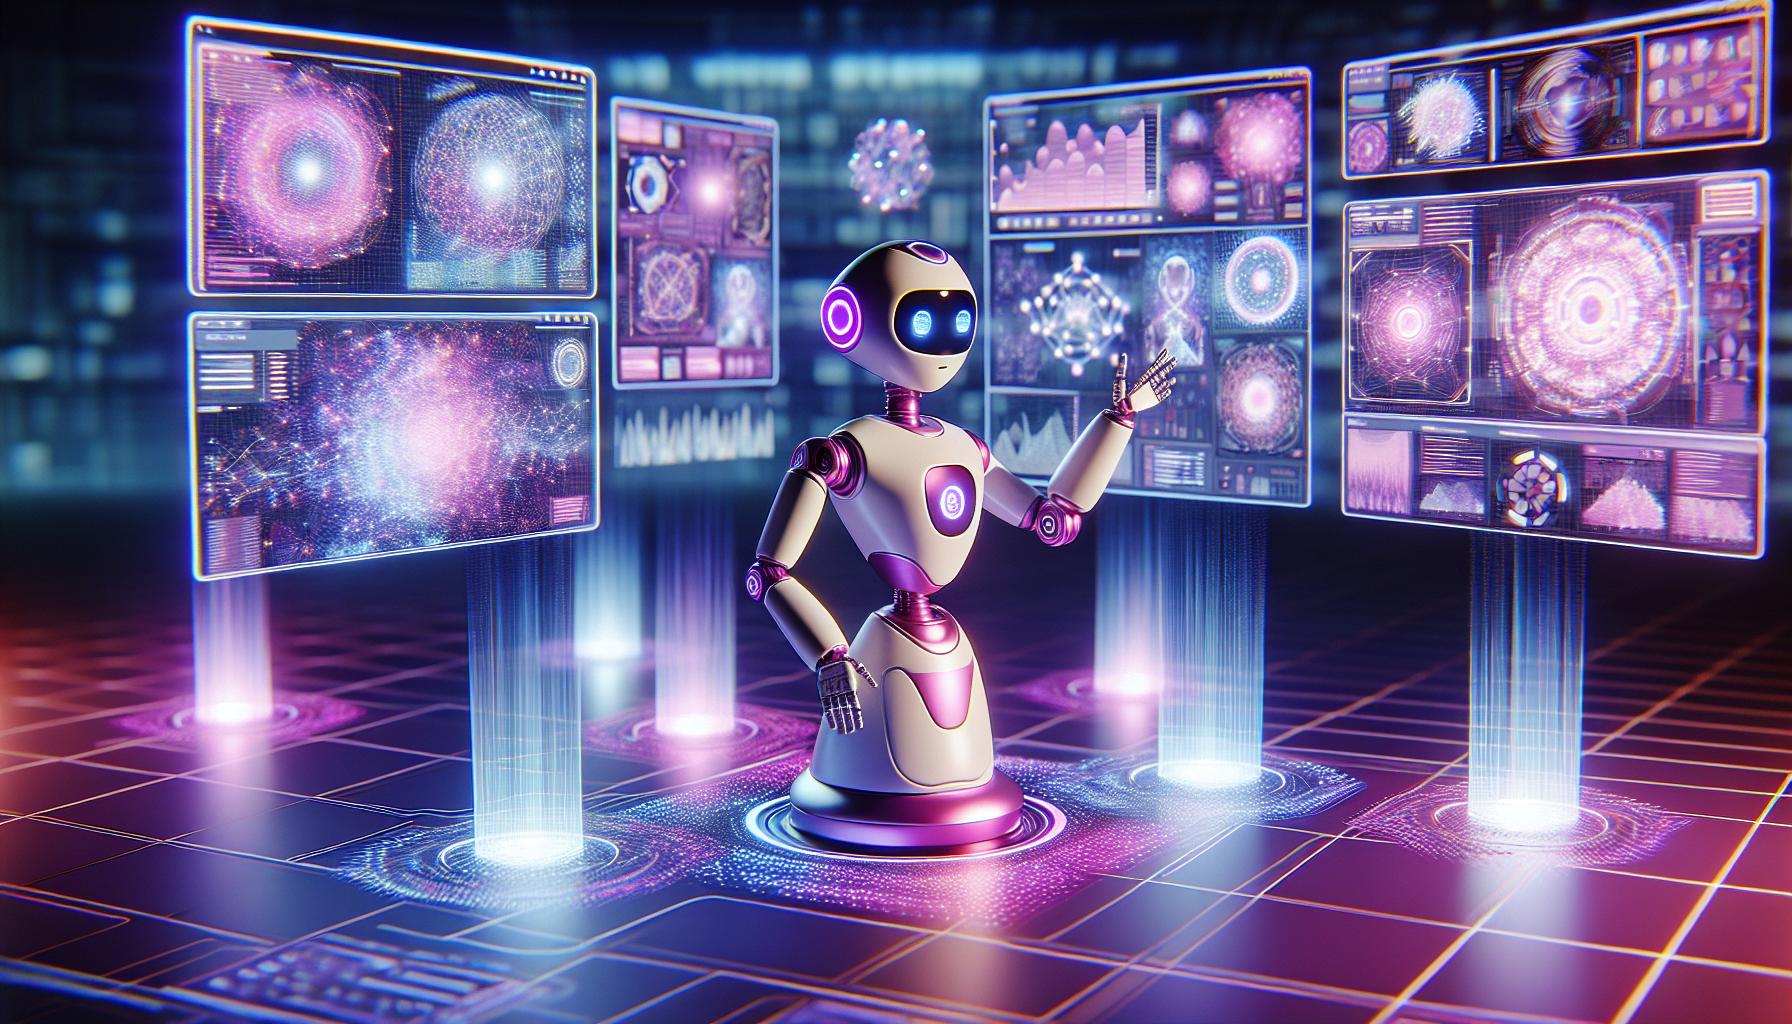 robot IA dessin anime futuriste couleurs rose violet blanc interagissant avec ecrans holographiques environnement high tech technologie avancee.jpg